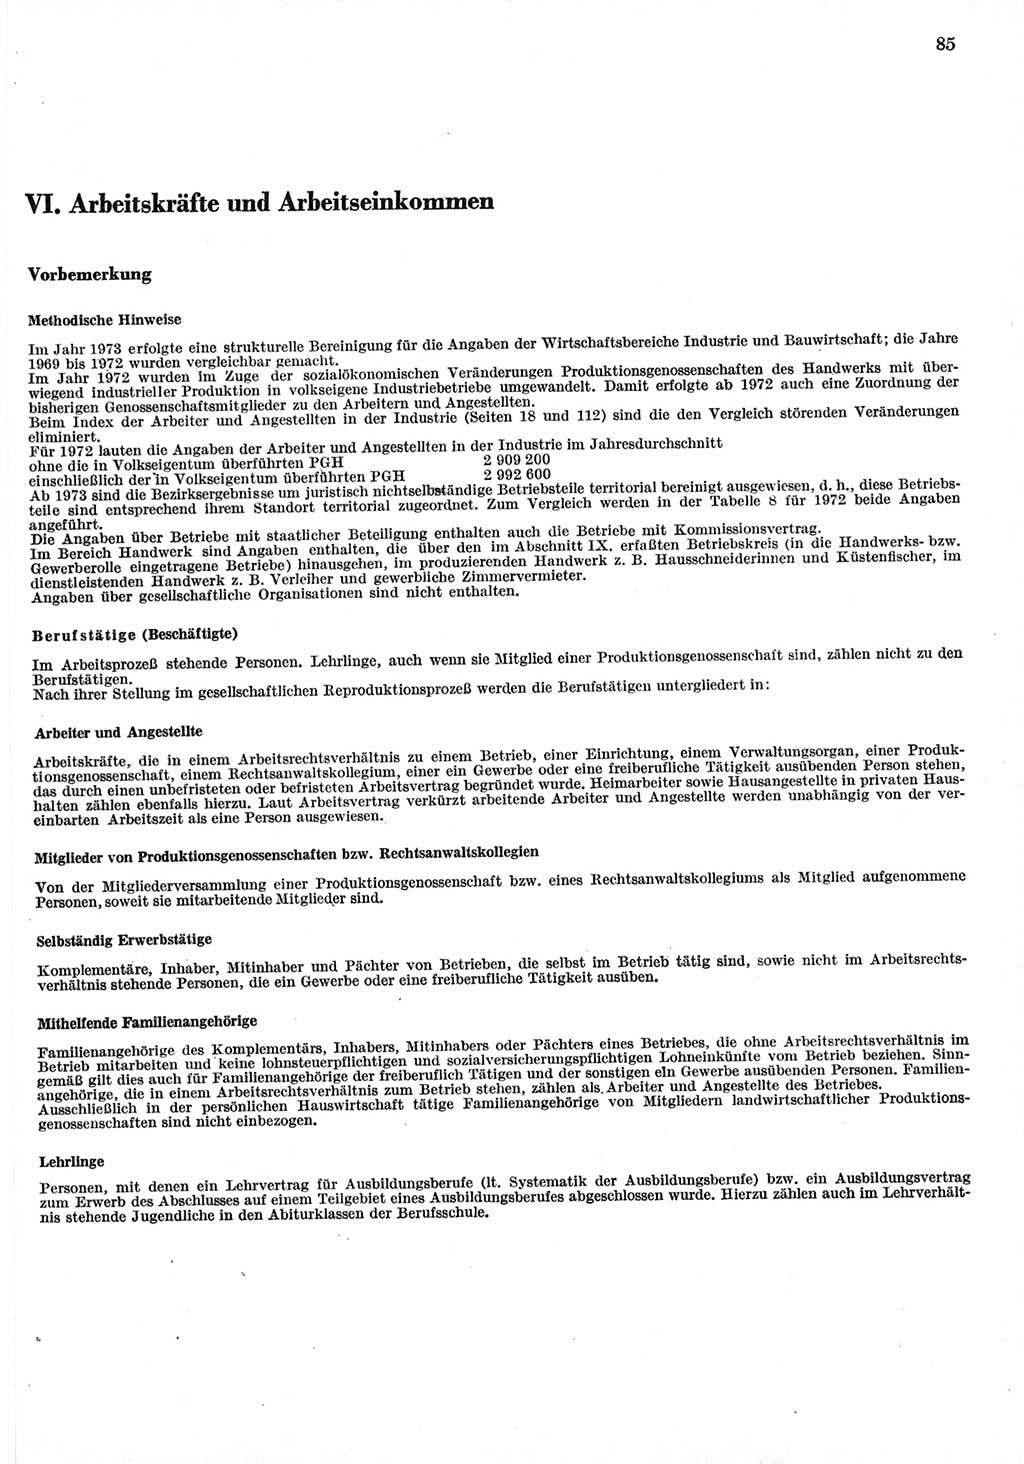 Statistisches Jahrbuch der Deutschen Demokratischen Republik (DDR) 1977, Seite 85 (Stat. Jb. DDR 1977, S. 85)